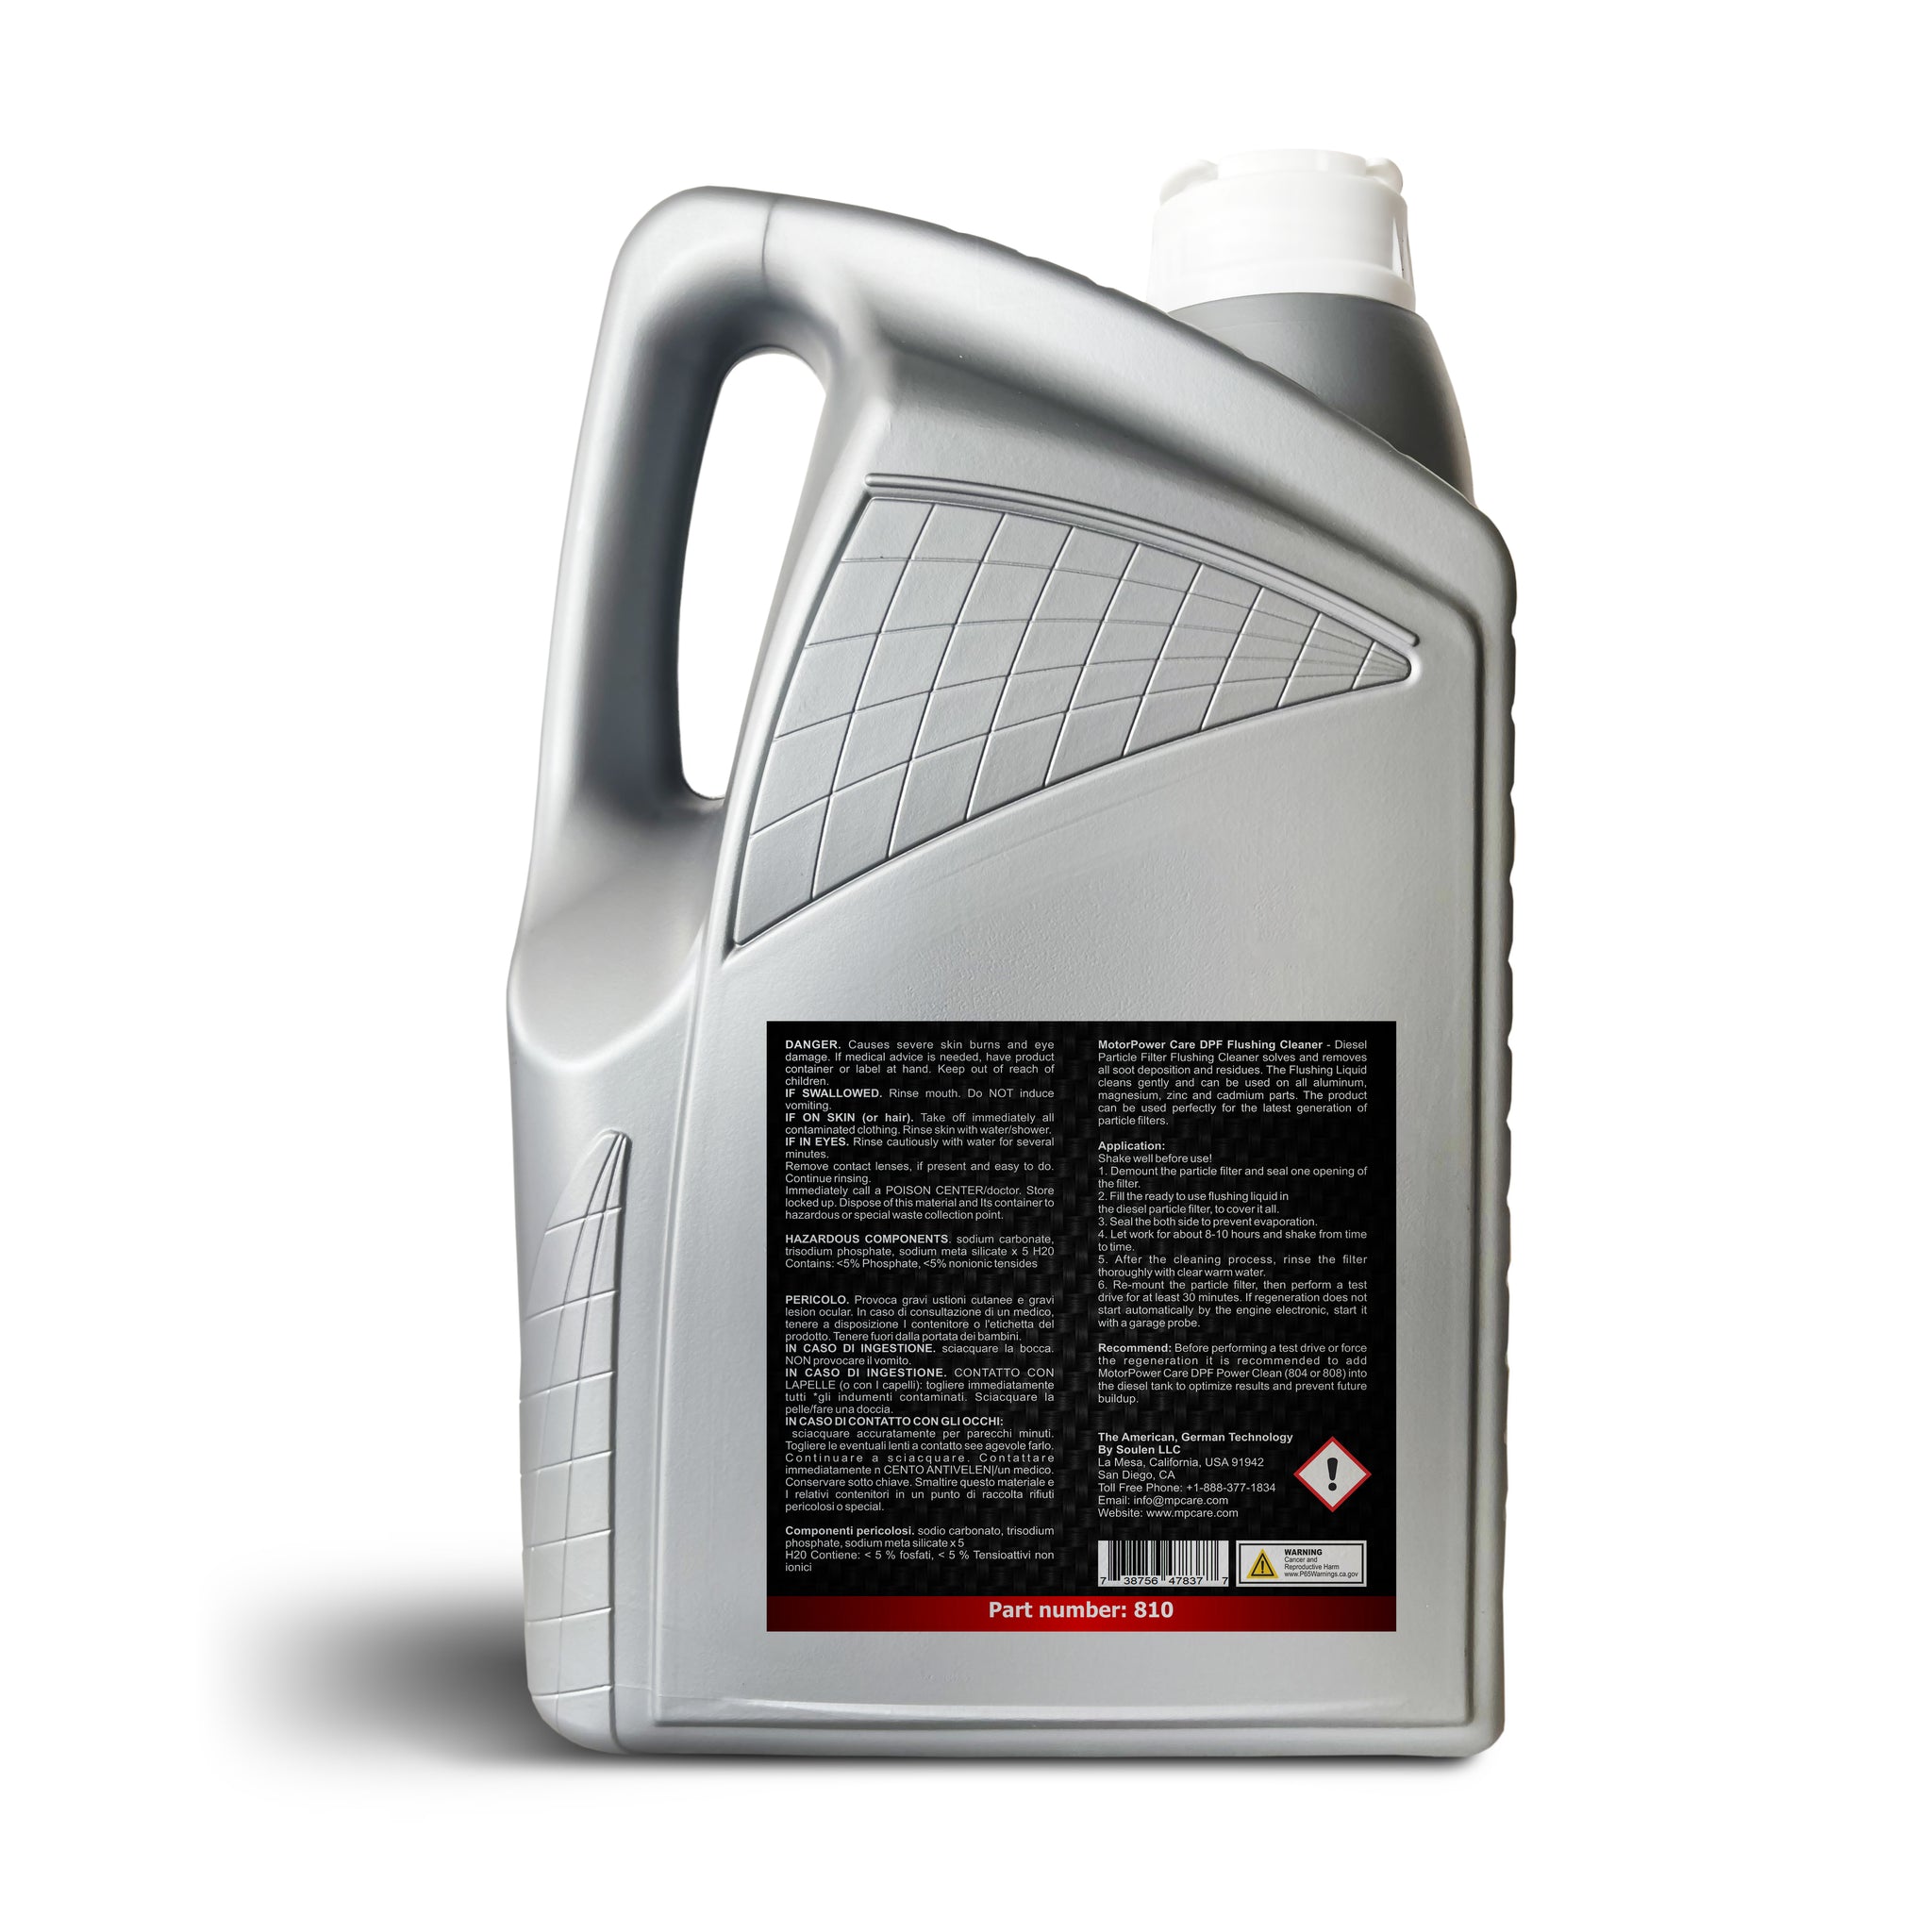 DPF Cleaner & Flush, Additive Diesel